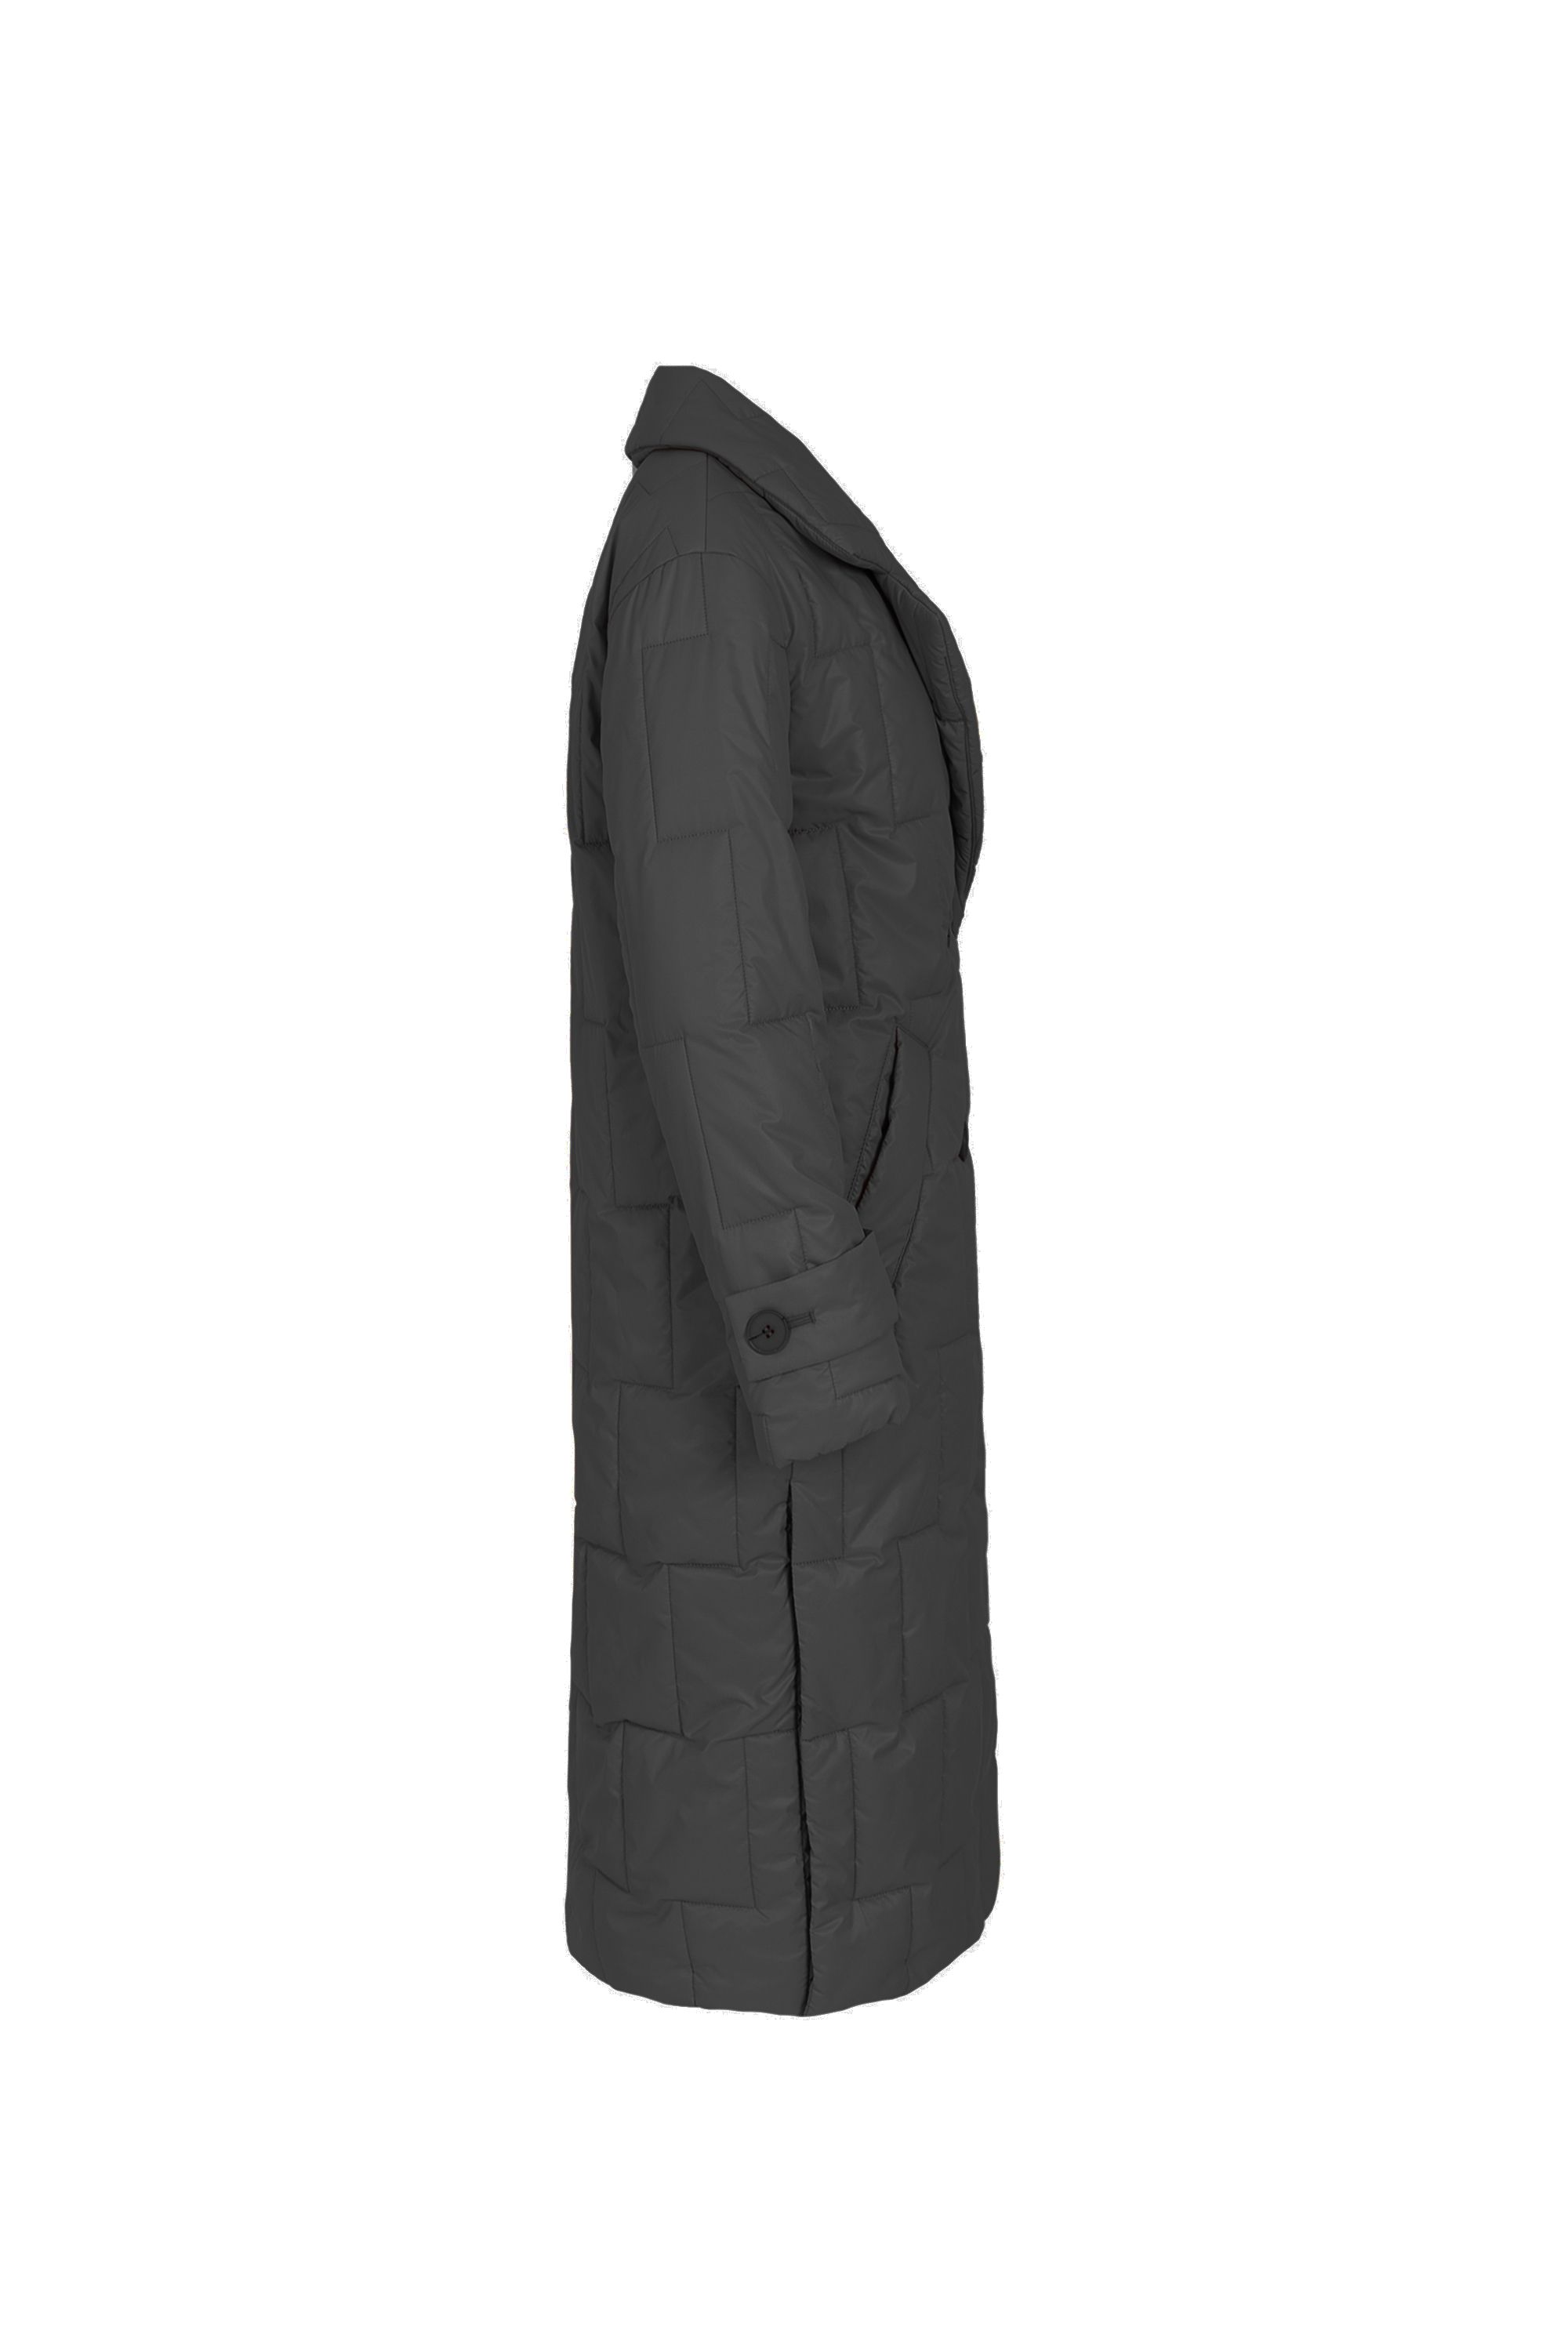 Пальто женское плащевое утепленное 5-12593-1. Фото 5.